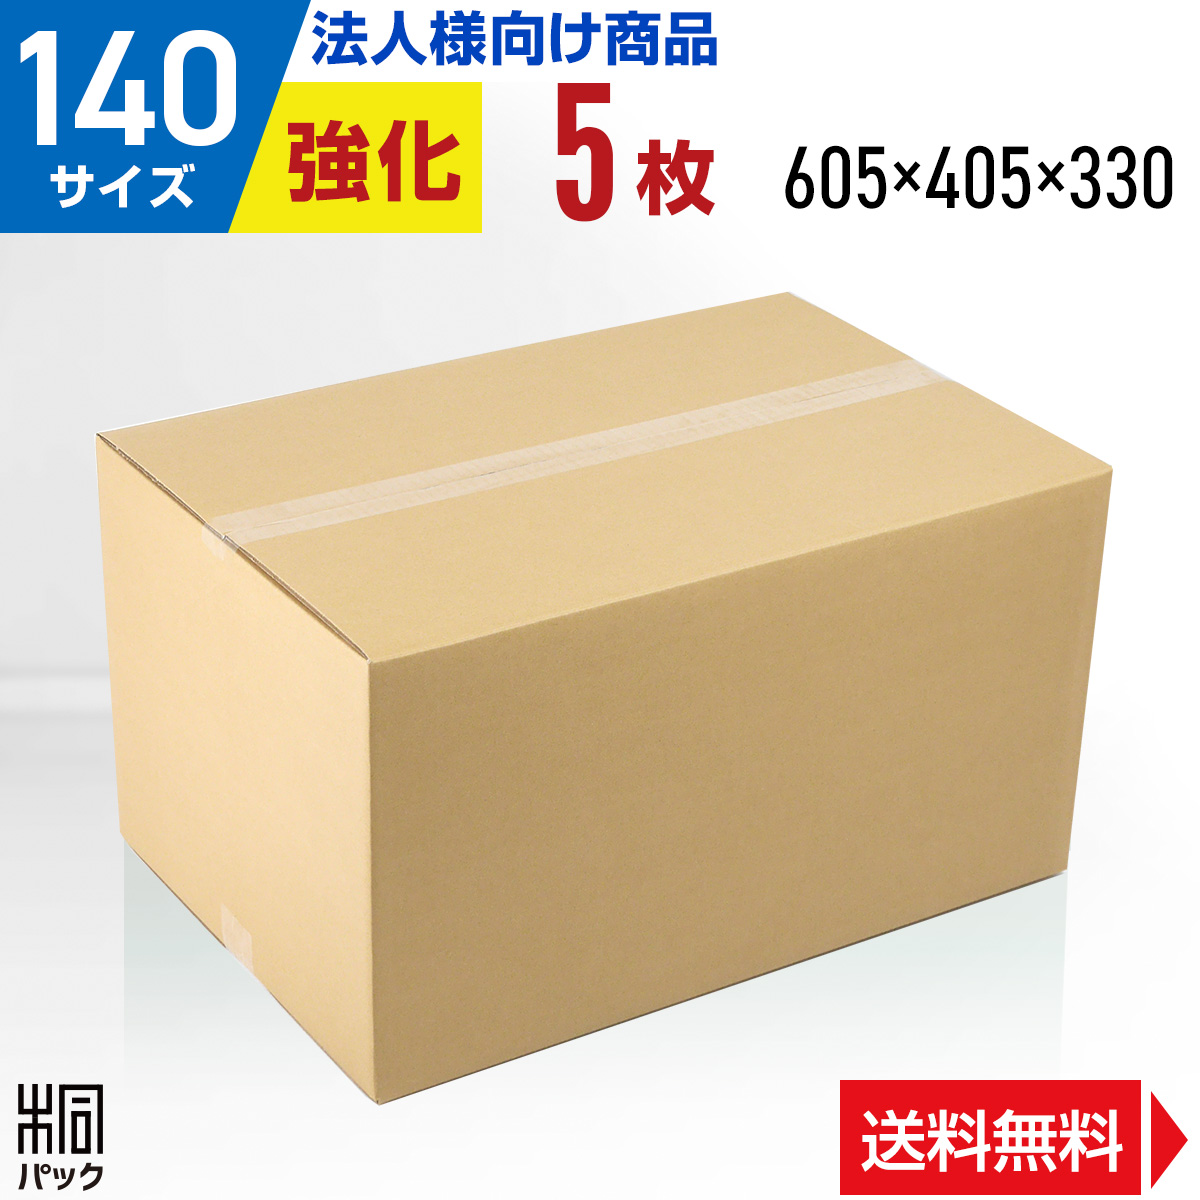 【楽天市場】【法人特価】段ボール 箱 中芯強化 140サイズ 10枚 